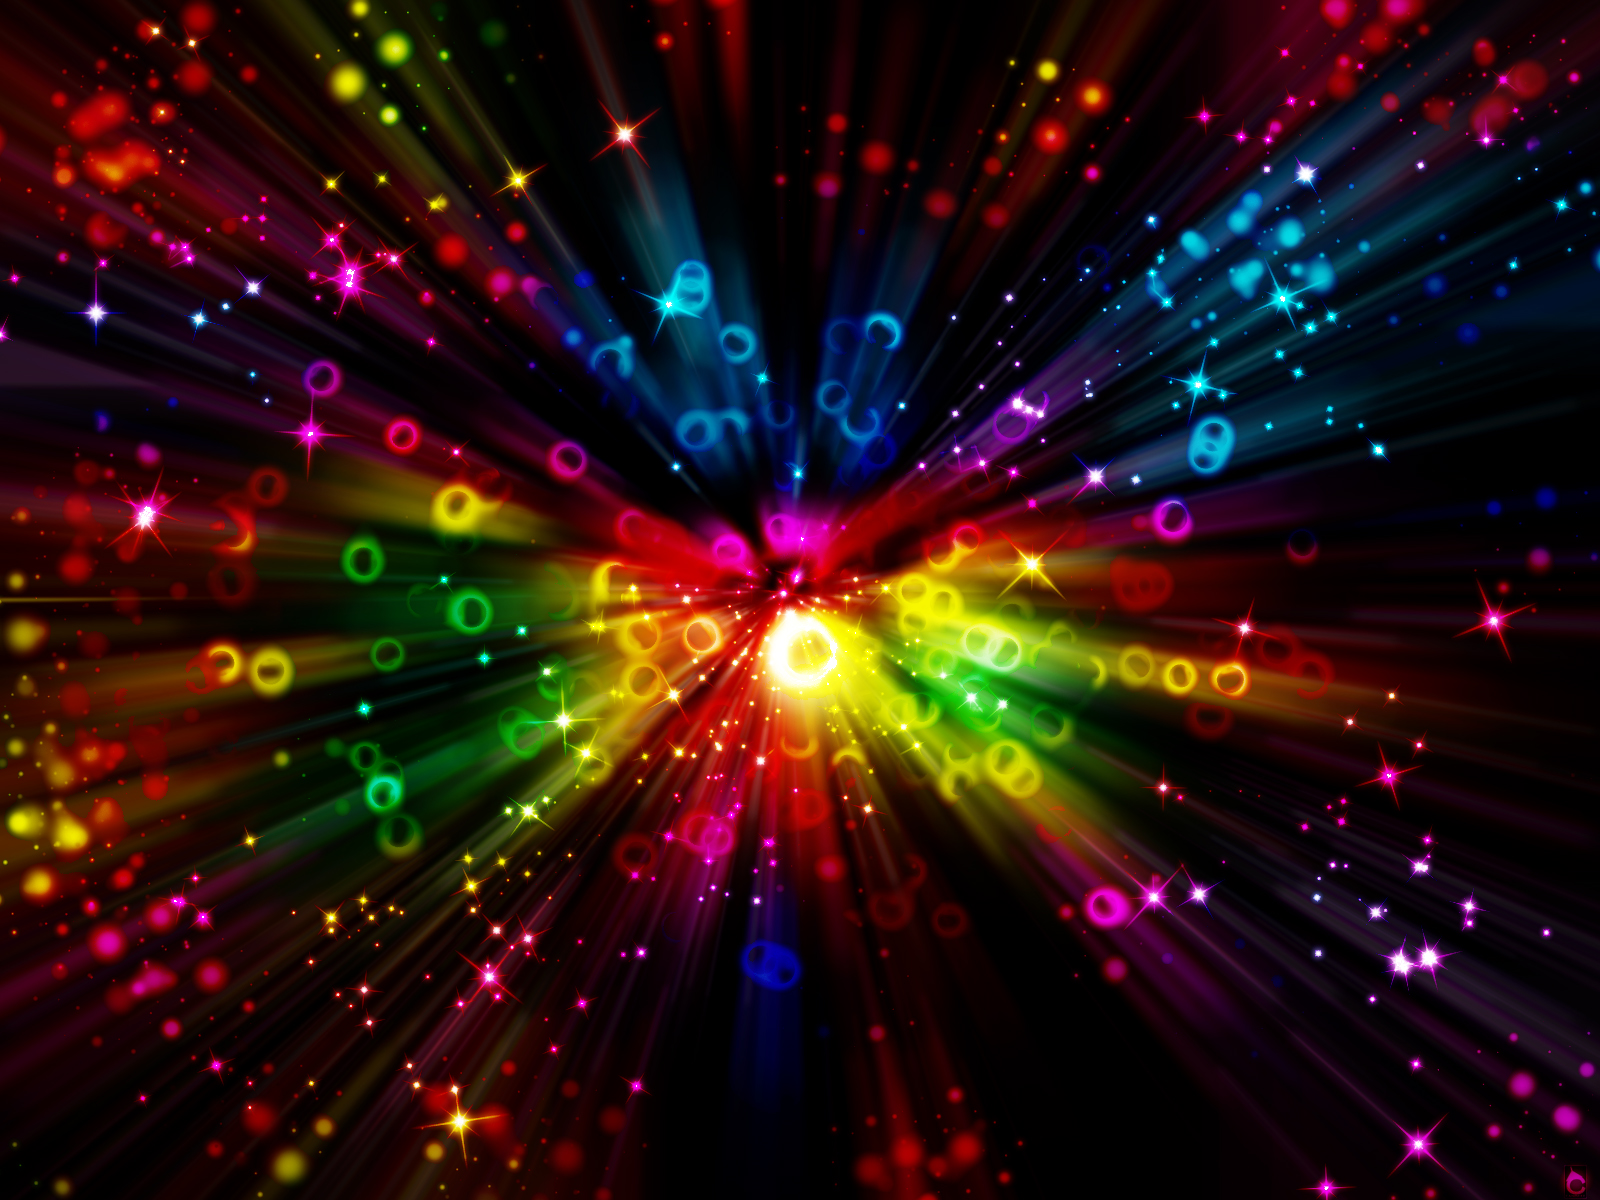 Univers-colors - Tout Les Fond D Ecran , HD Wallpaper & Backgrounds